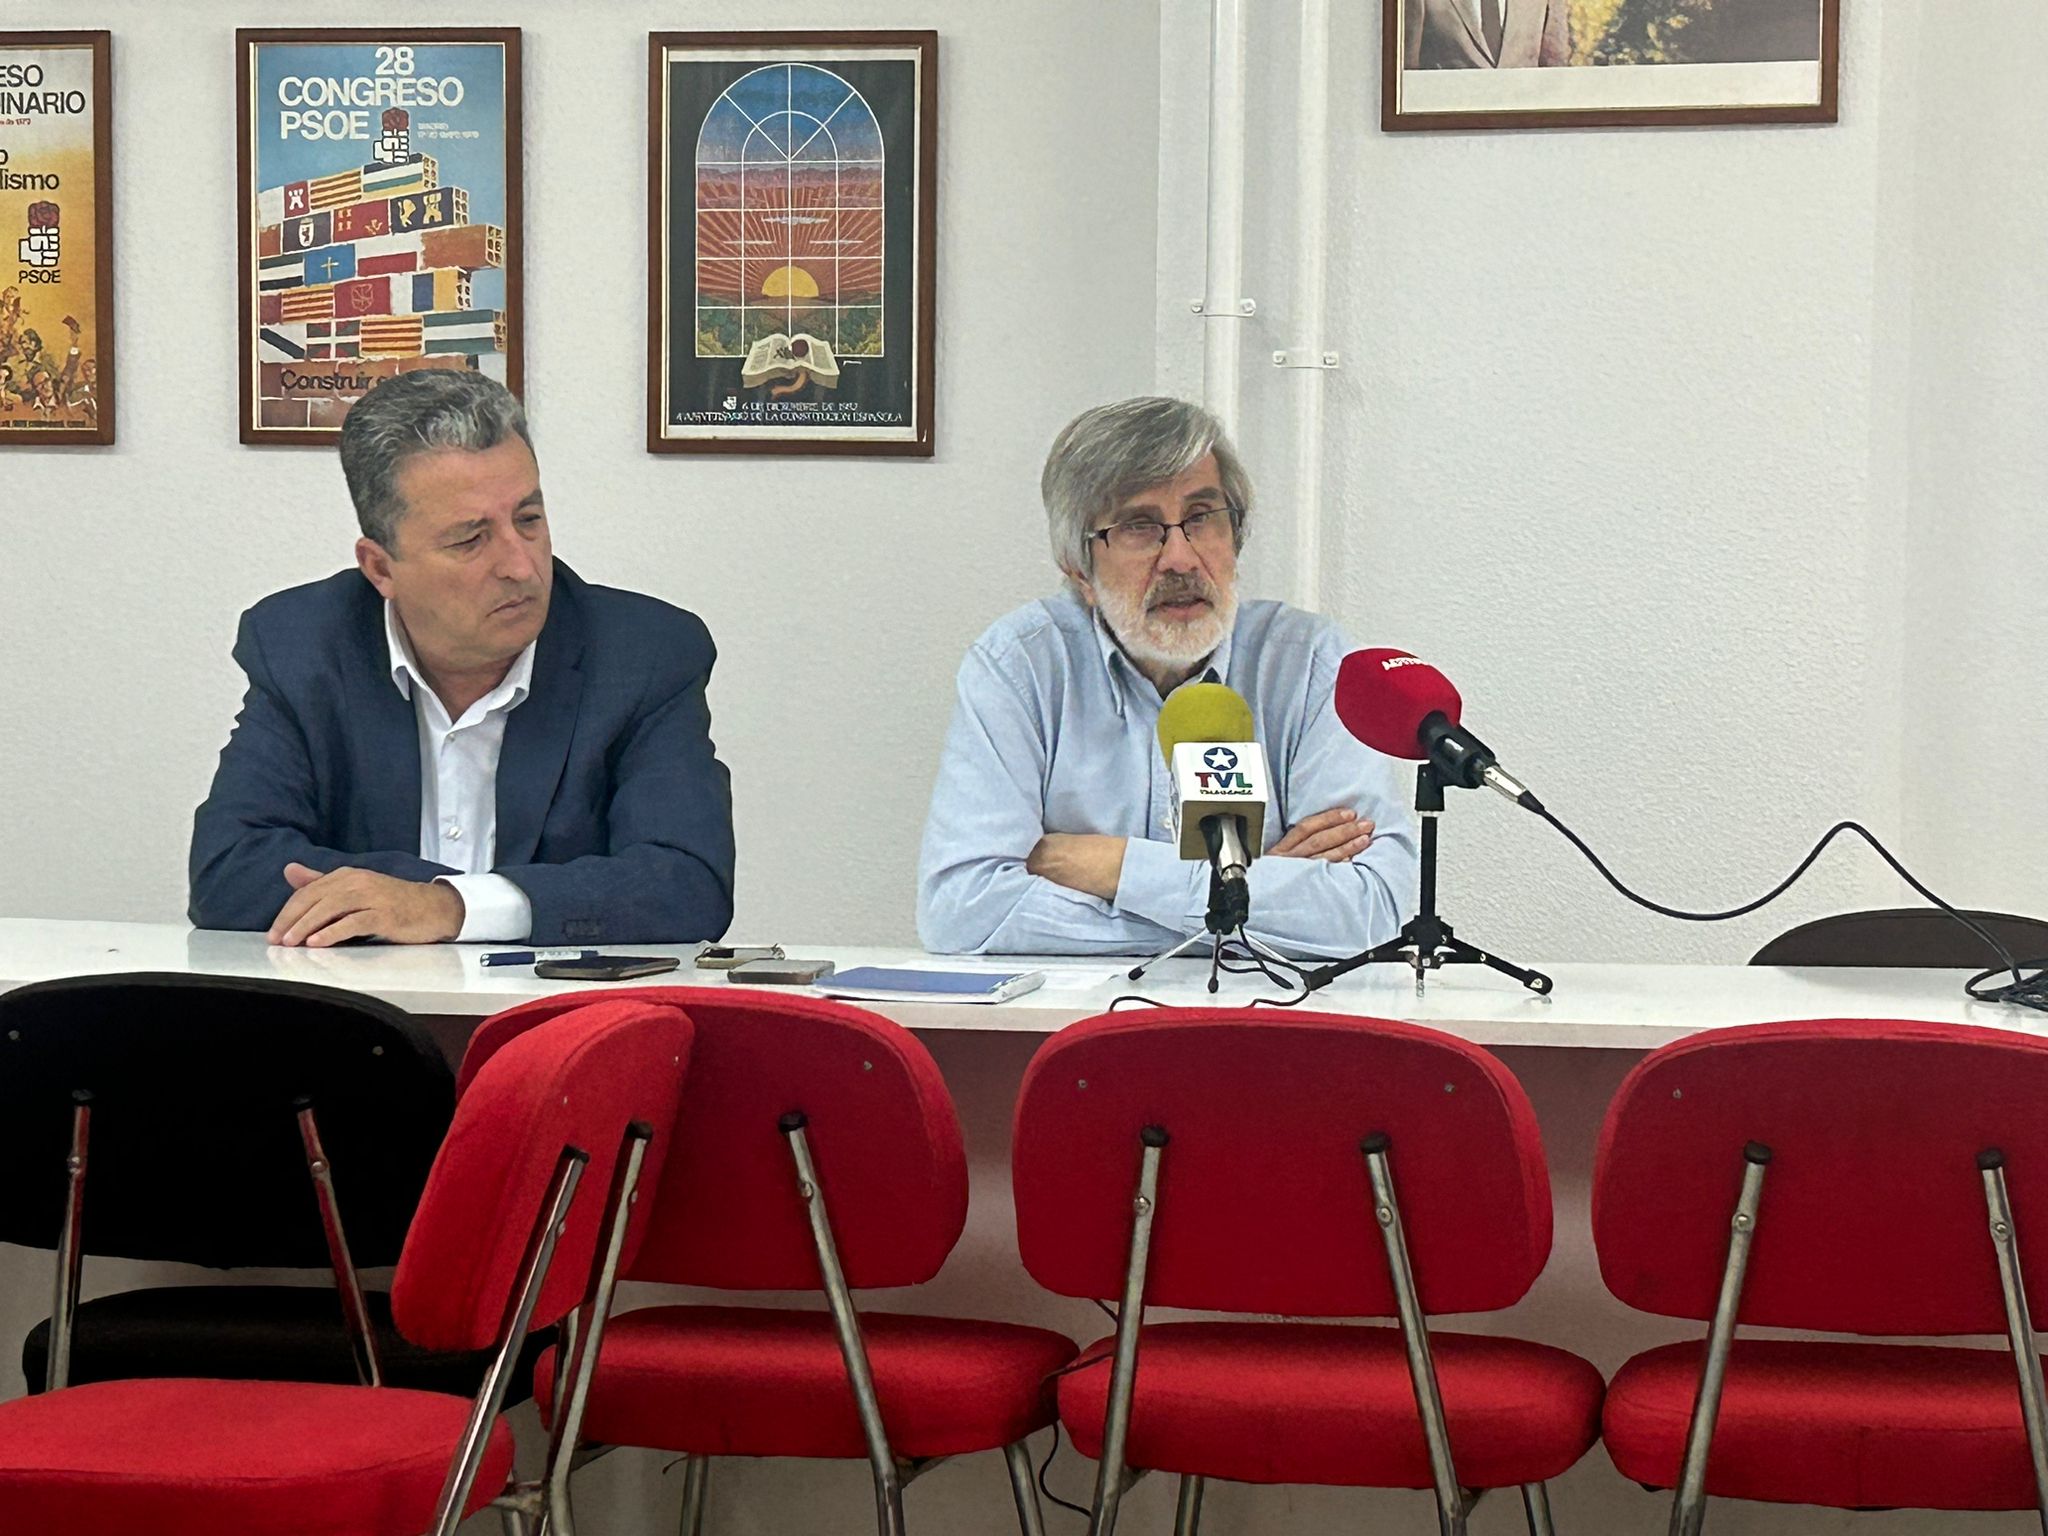 Secretario gral Psoe de Leganes presentacion-Rafa L. Pérez, secretario General del PSOE de Leganés: “Queremos llevar a cabo una oposición exigente, vigilante, pero también una oposición constructiva, dialogante y propositiva”